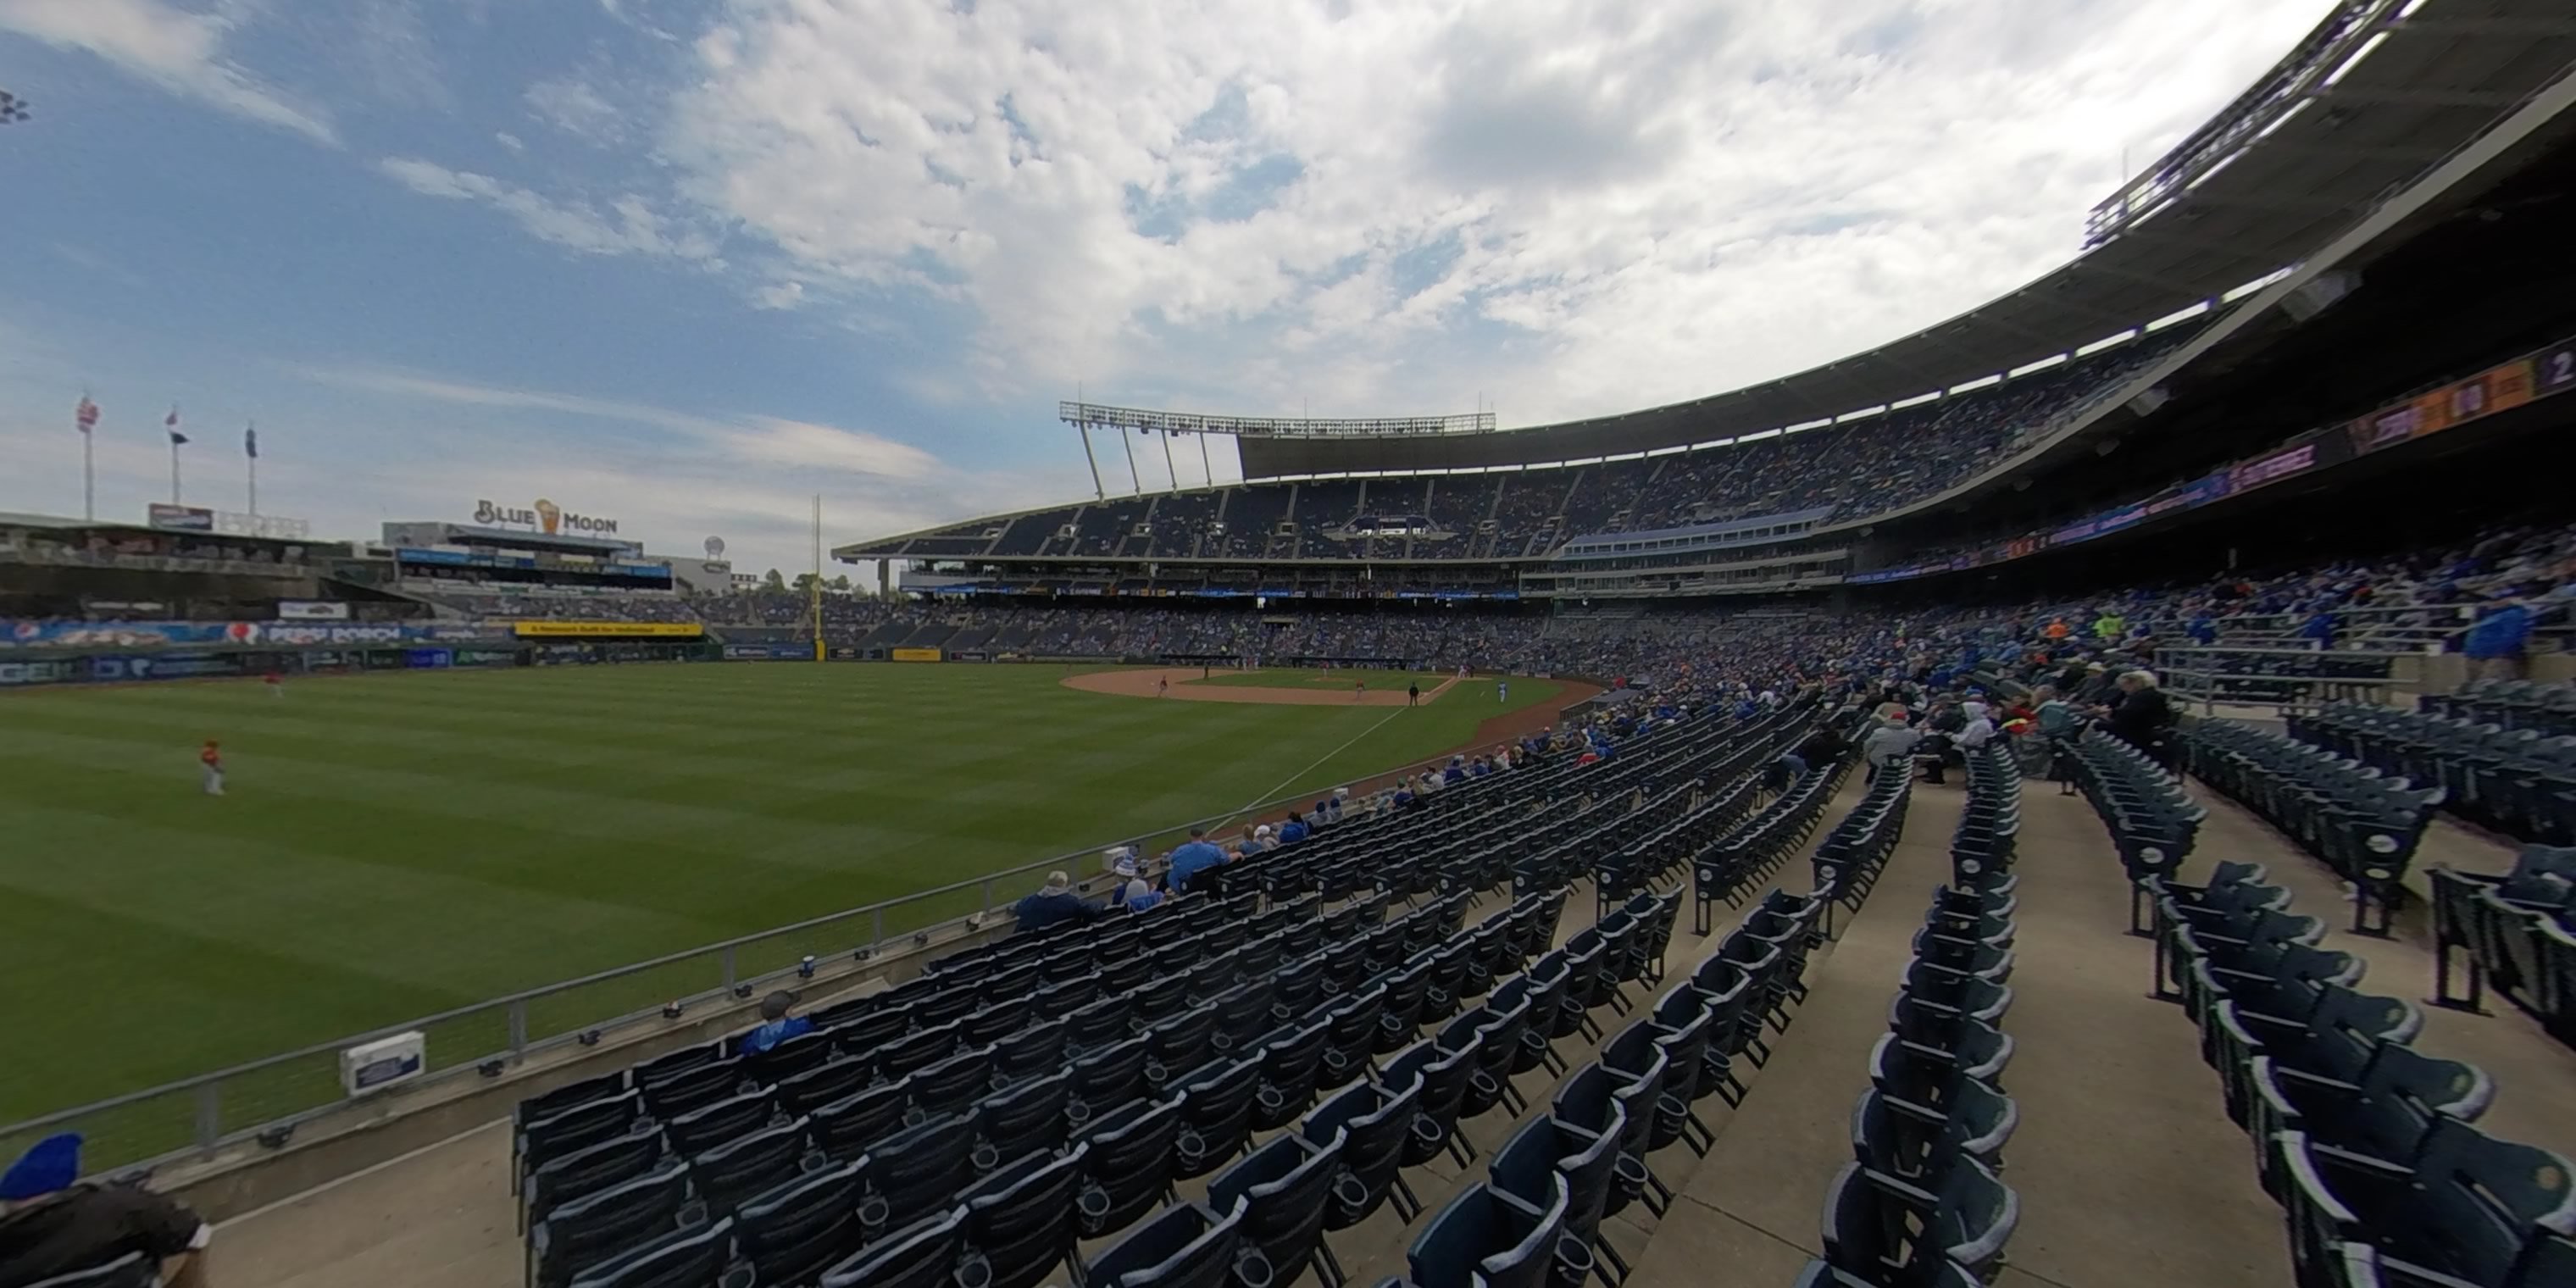 section 108 panoramic seat view  - kauffman stadium